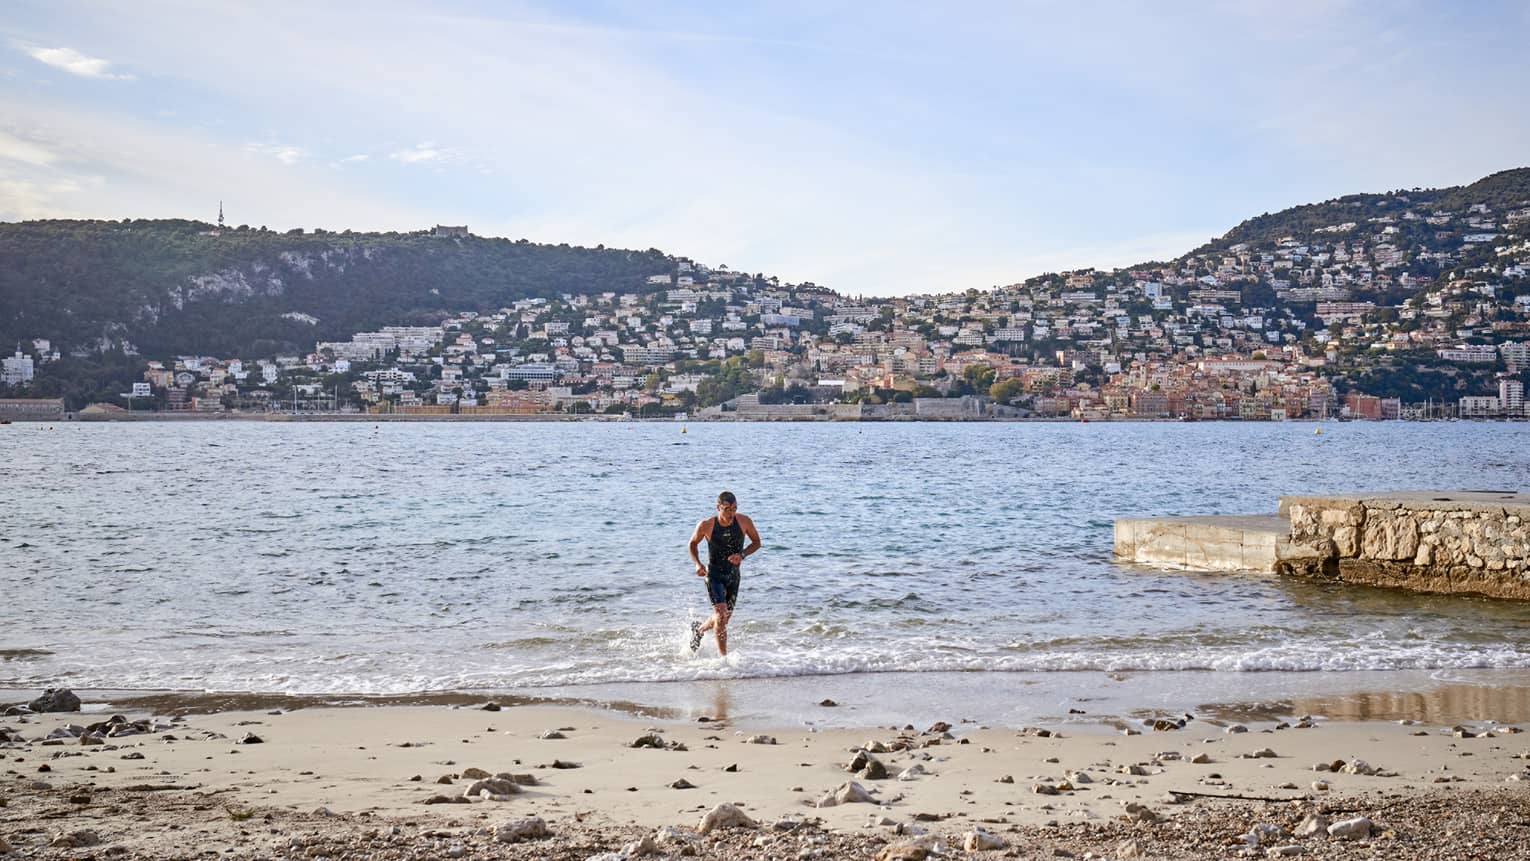 Man jogging in water toward sandy shore, hills in backdrop